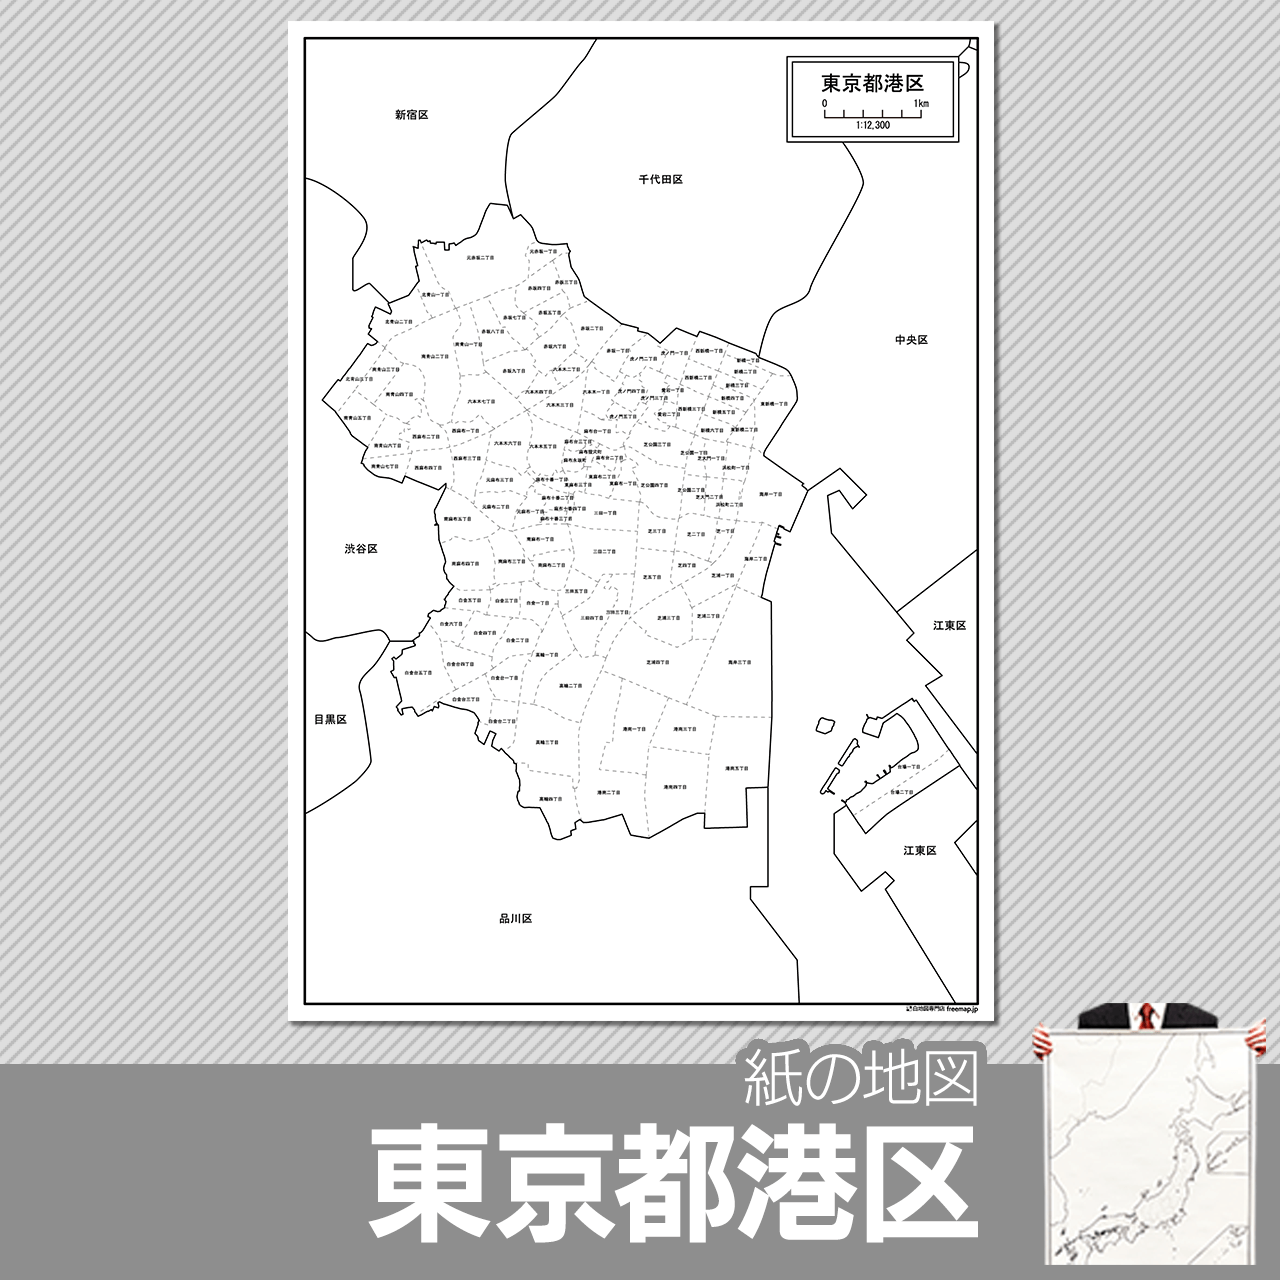 東京都港区の紙の白地図のサムネイル